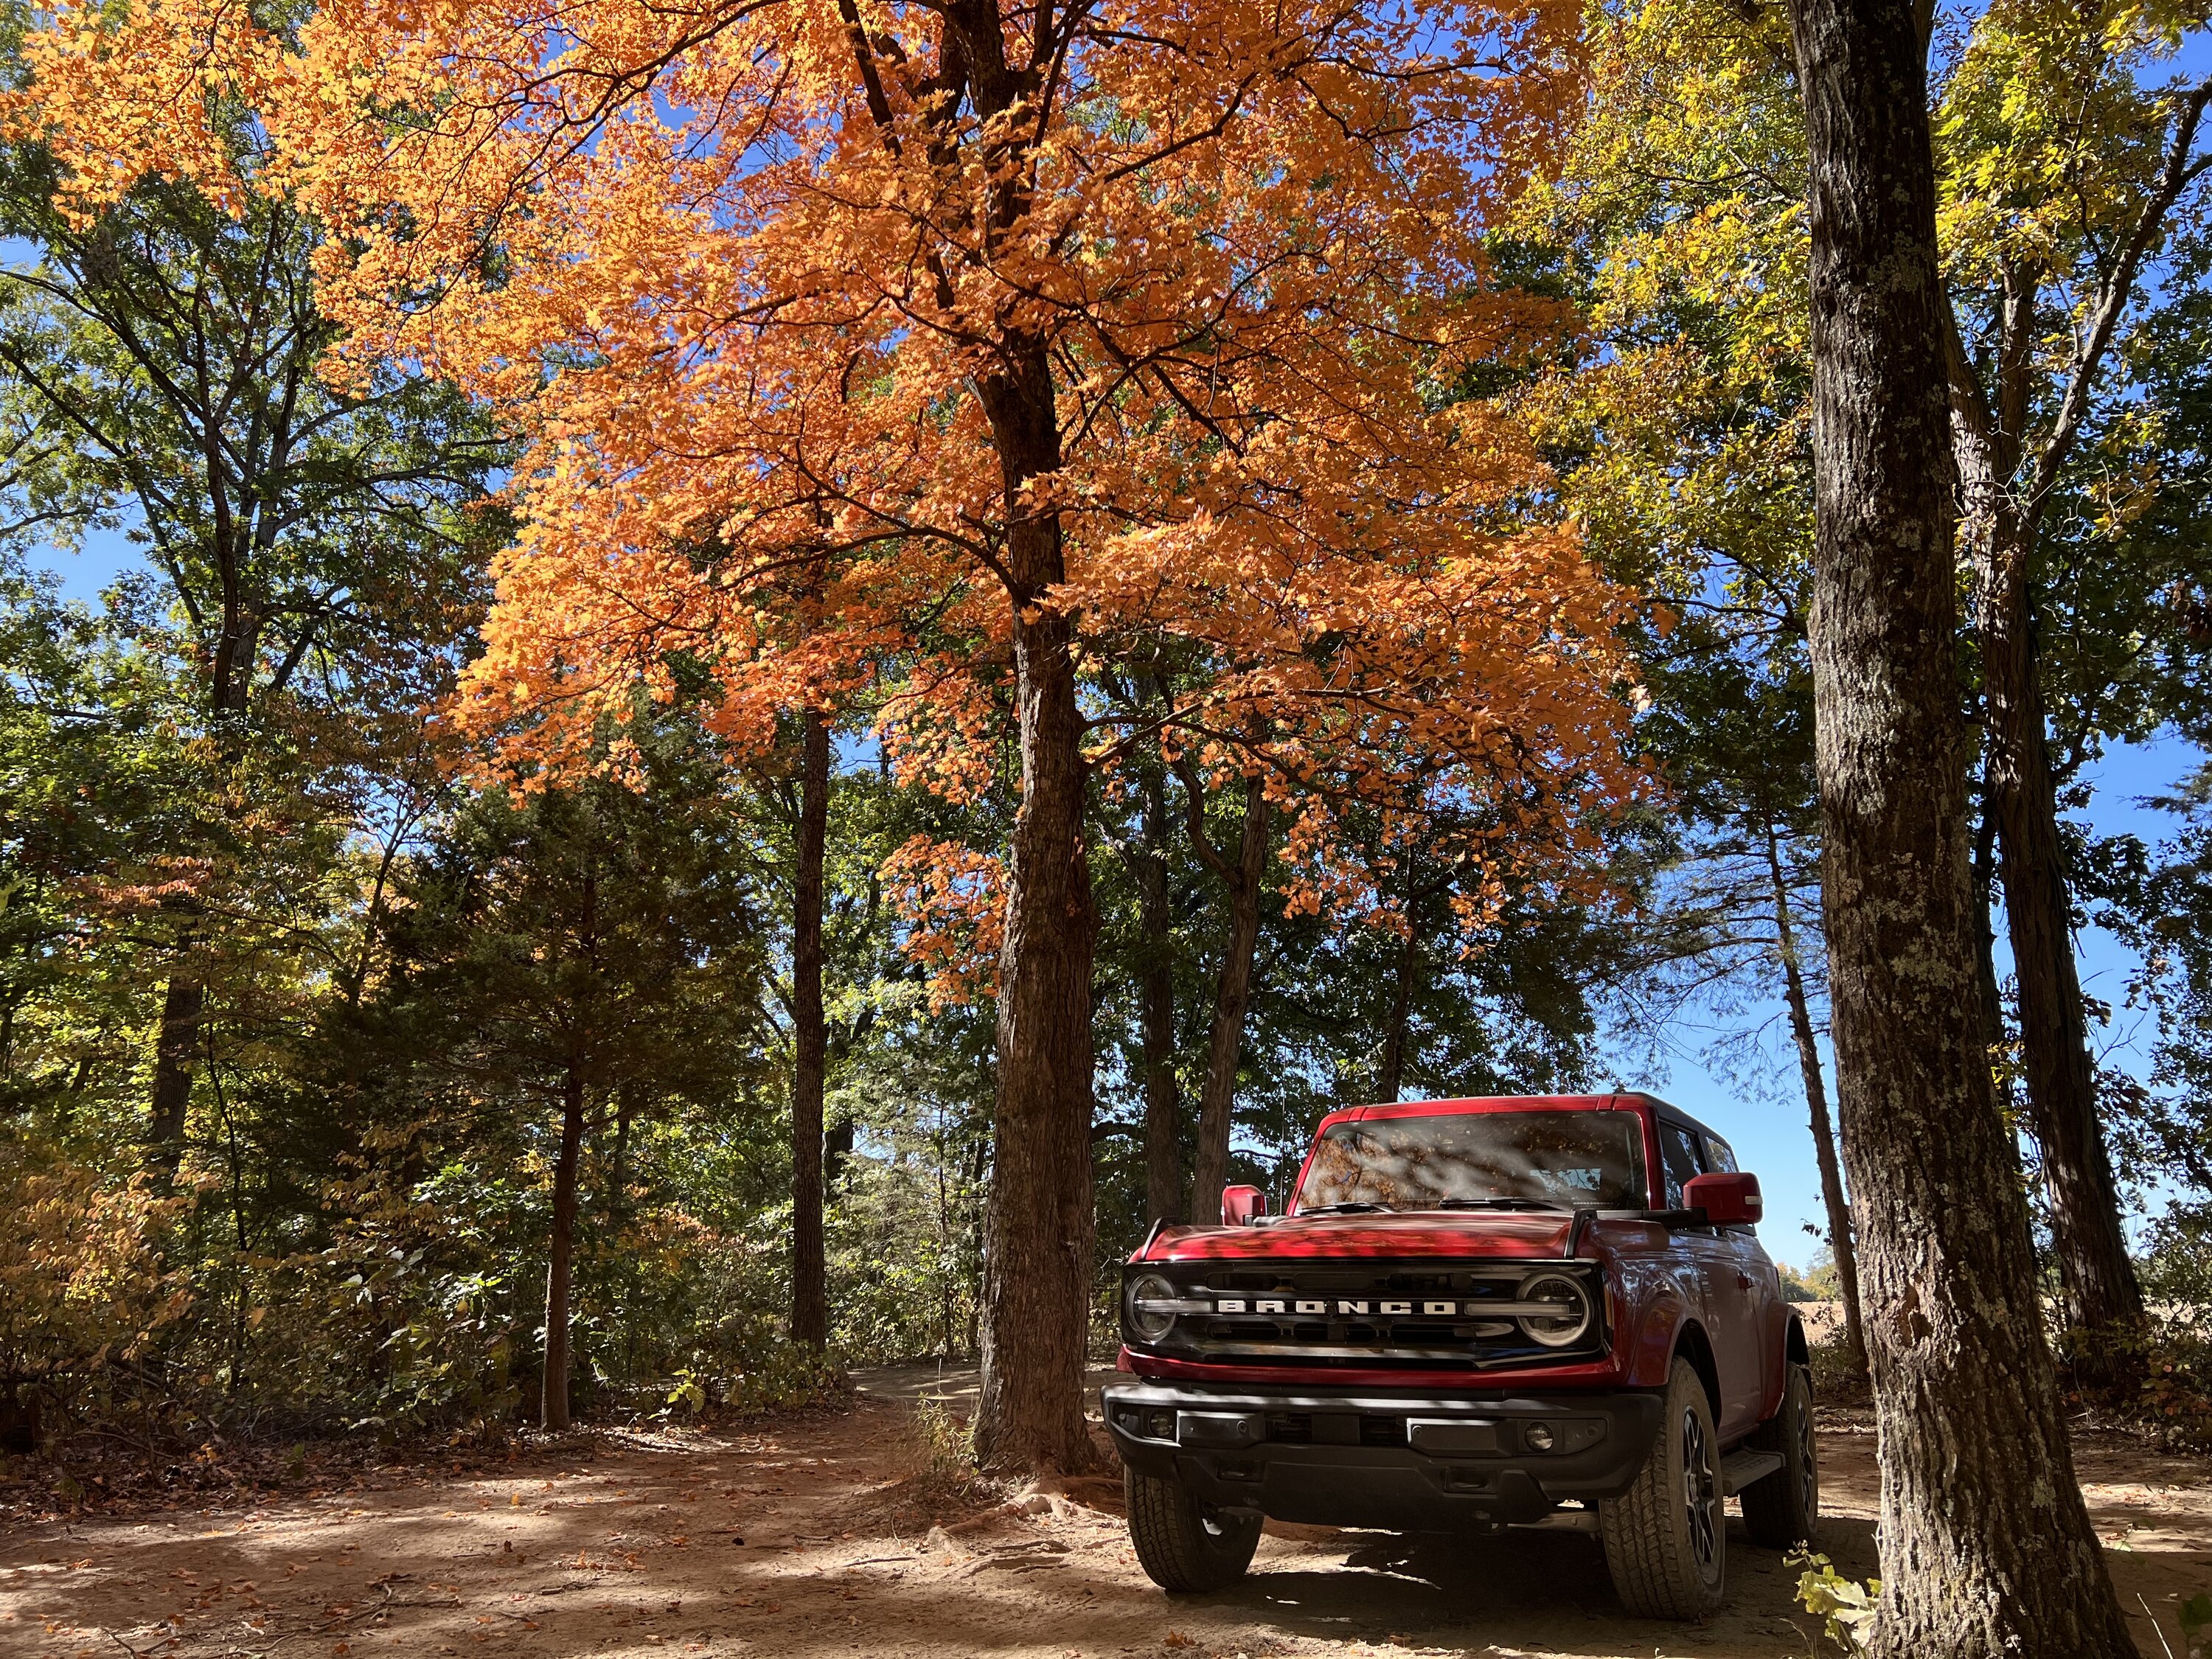 Ford Bronco 🍂 Show me your Fall (Autumn) Photos! I’ll start. 795B05AE-EC50-41E1-AB2E-8D8D36A6D481